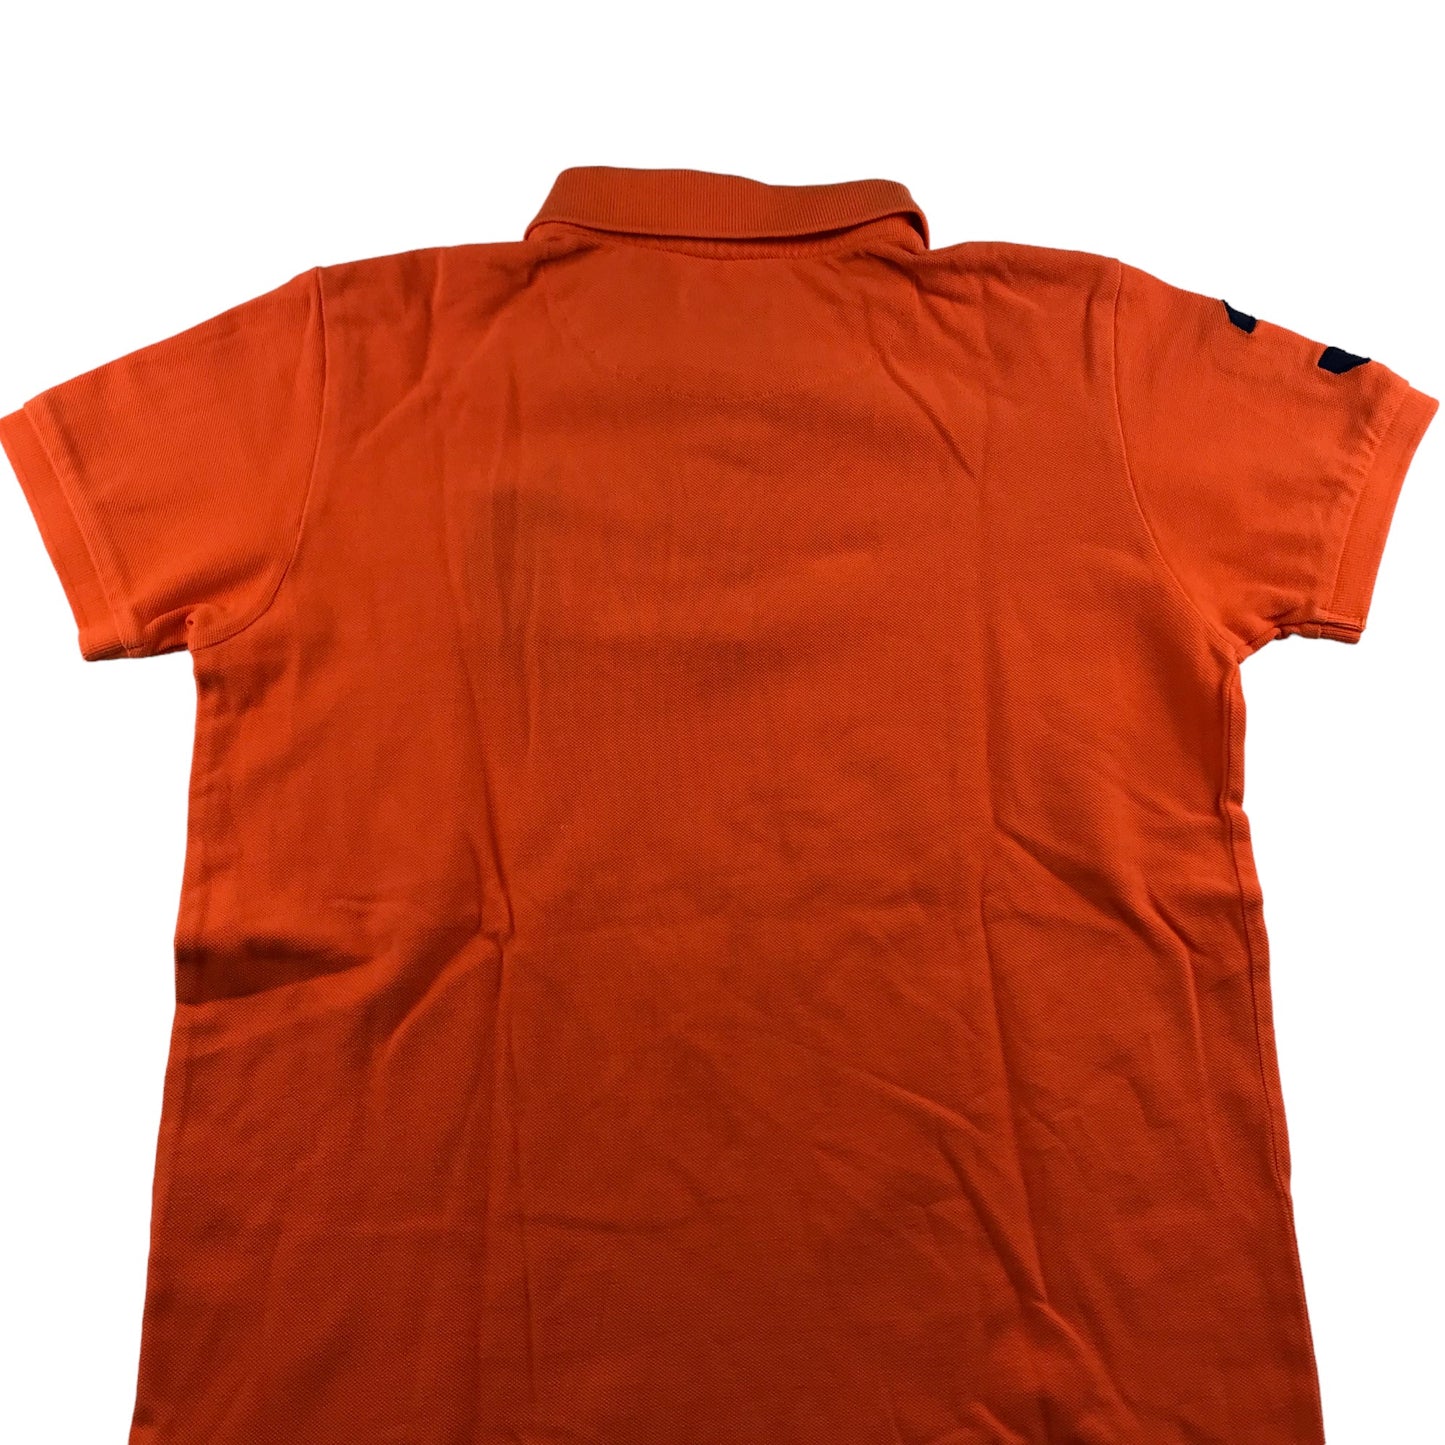 US Polo Assn Polo Shirt Age 14-16 Orange Short Sleeve Cotton